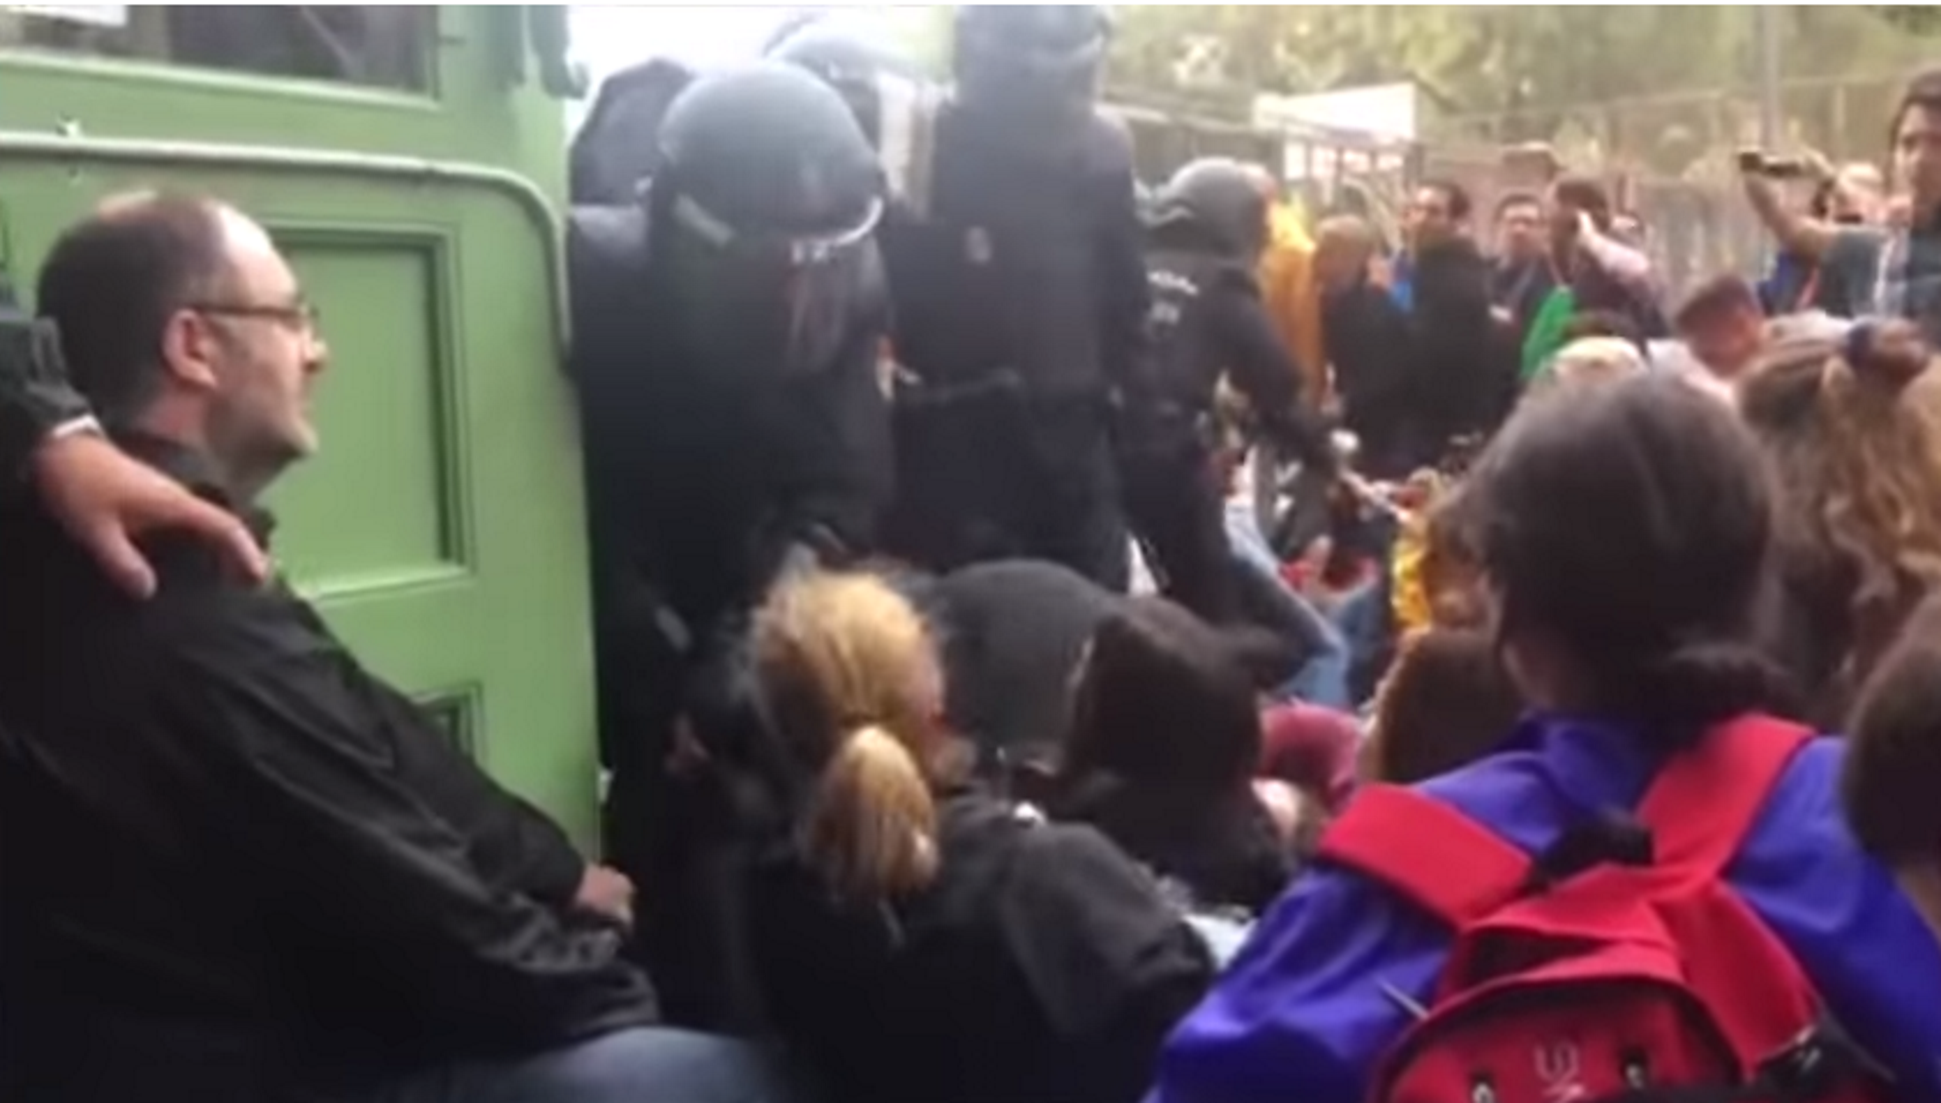 Aparecen nuevas imágenes de la represión policial el 1-O